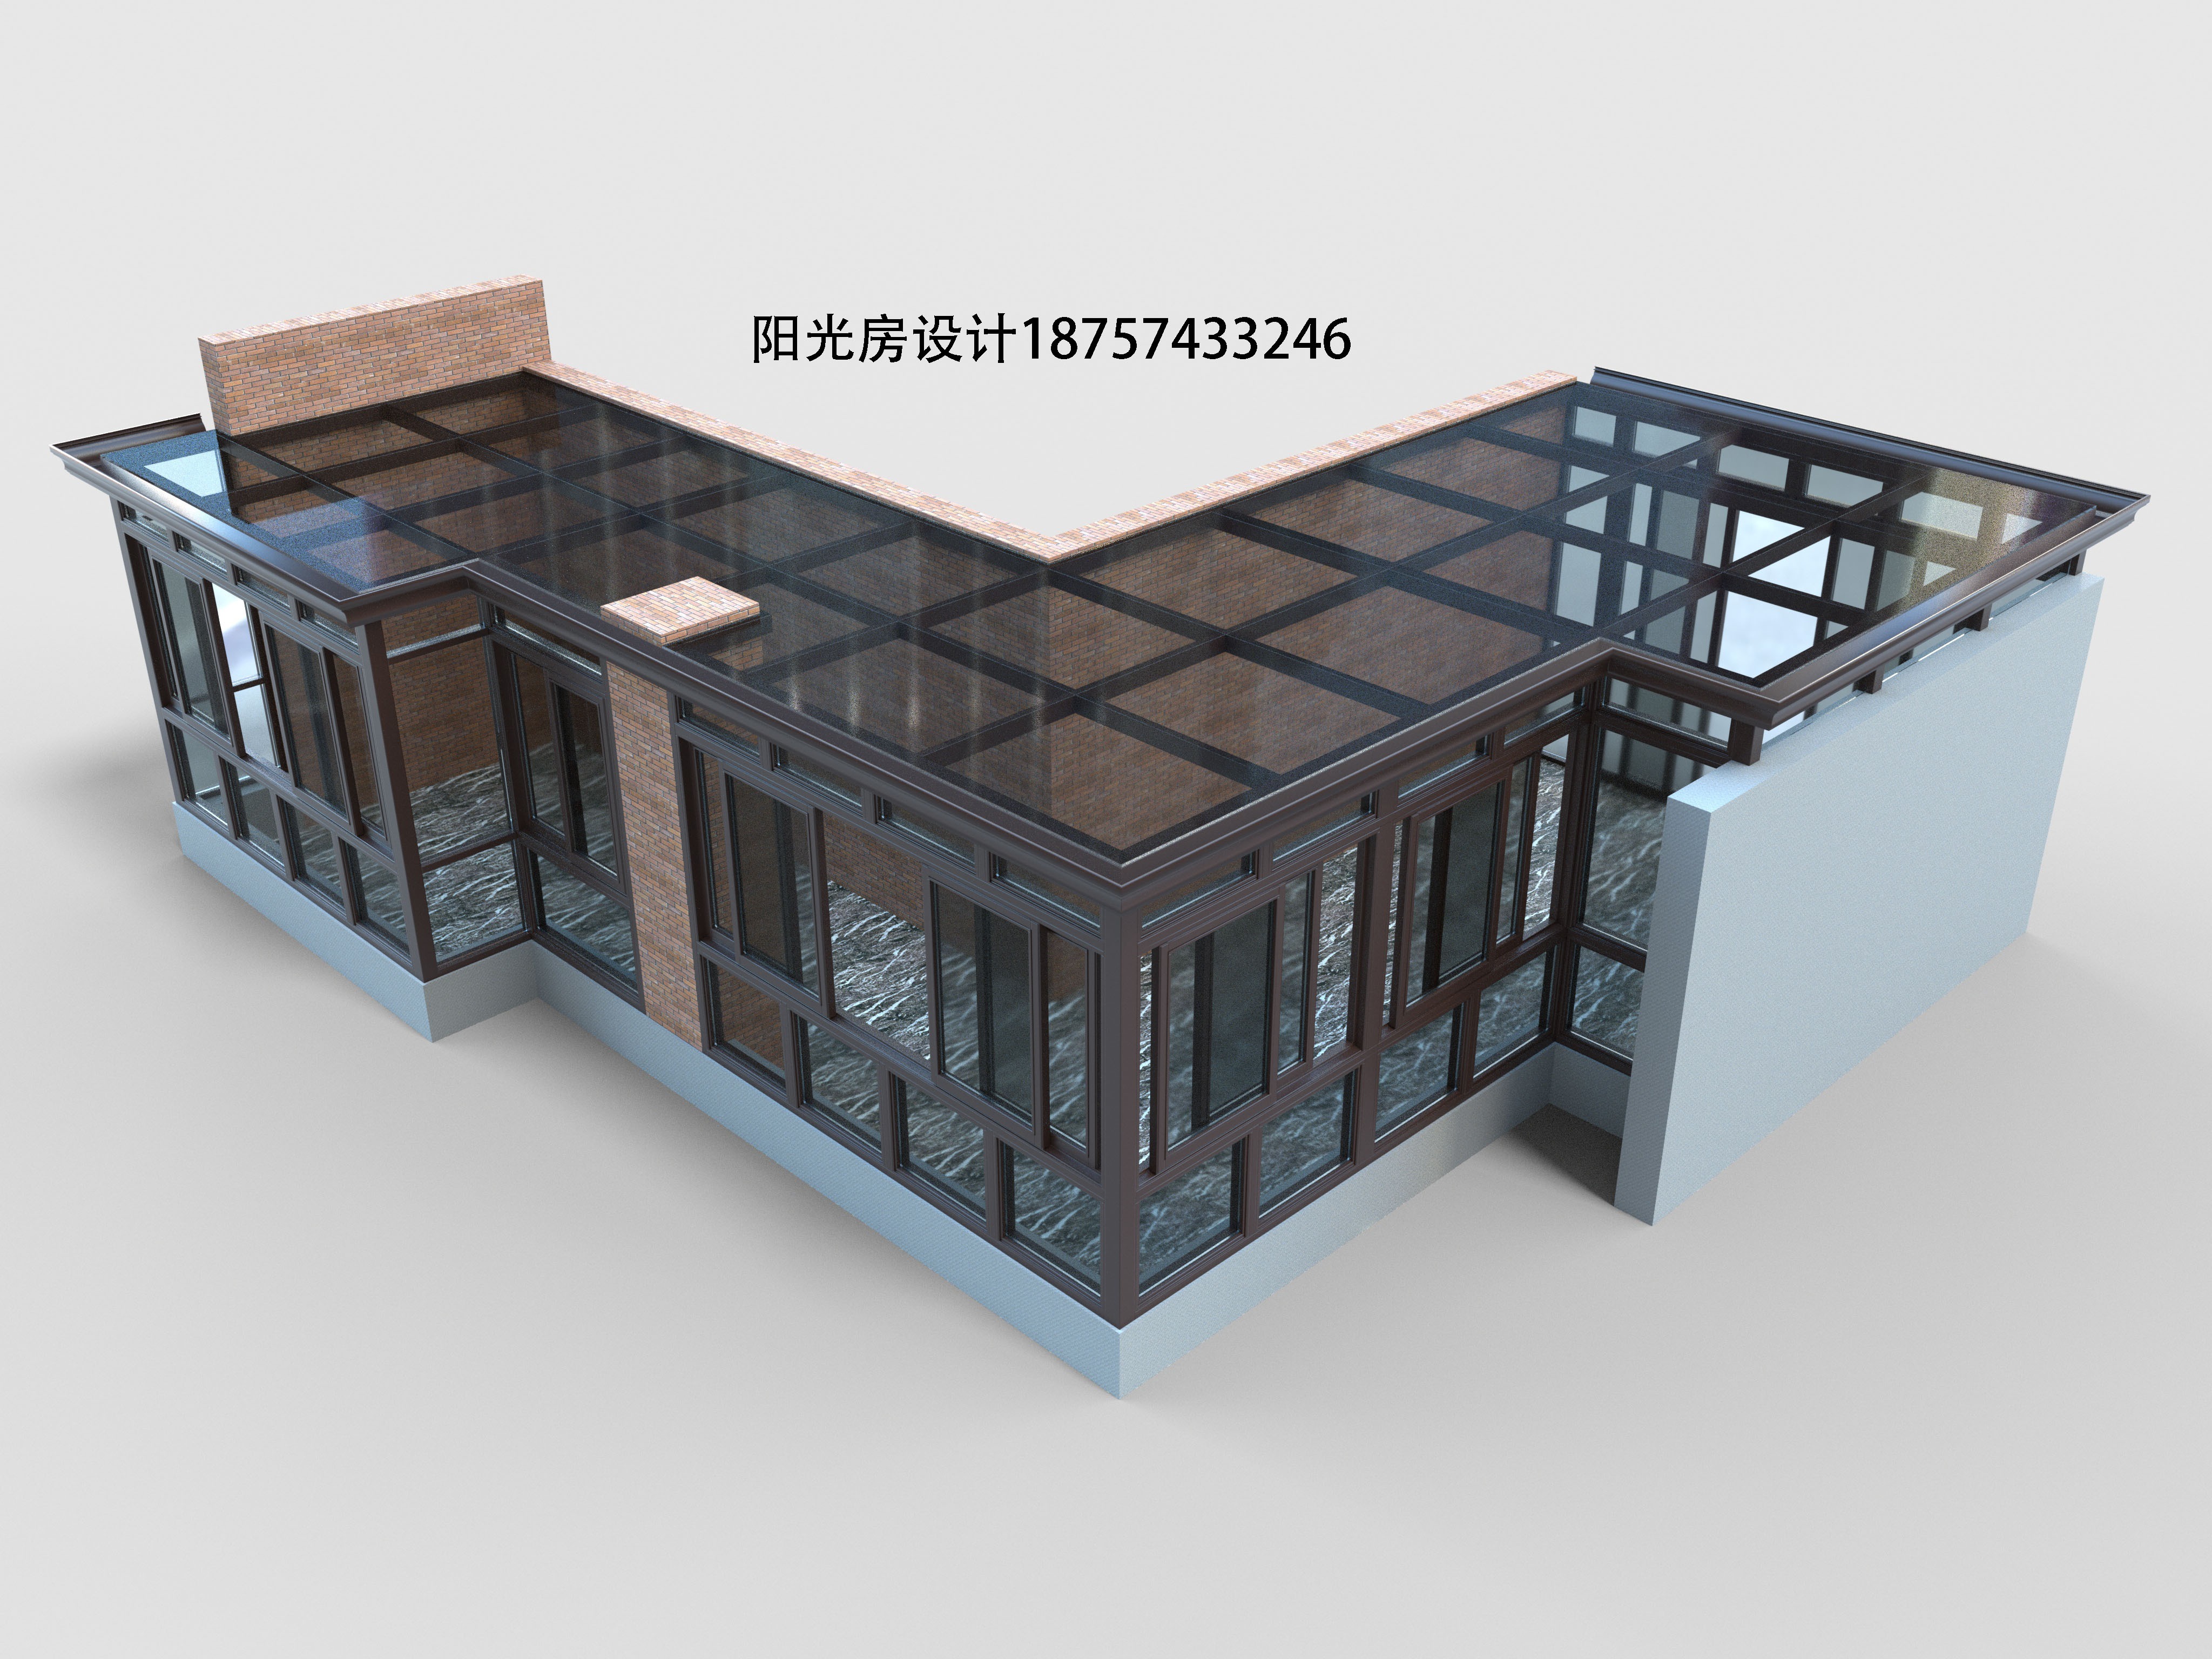 D13阳光房设计效果图 | 火星网－中国数字艺术第一门户